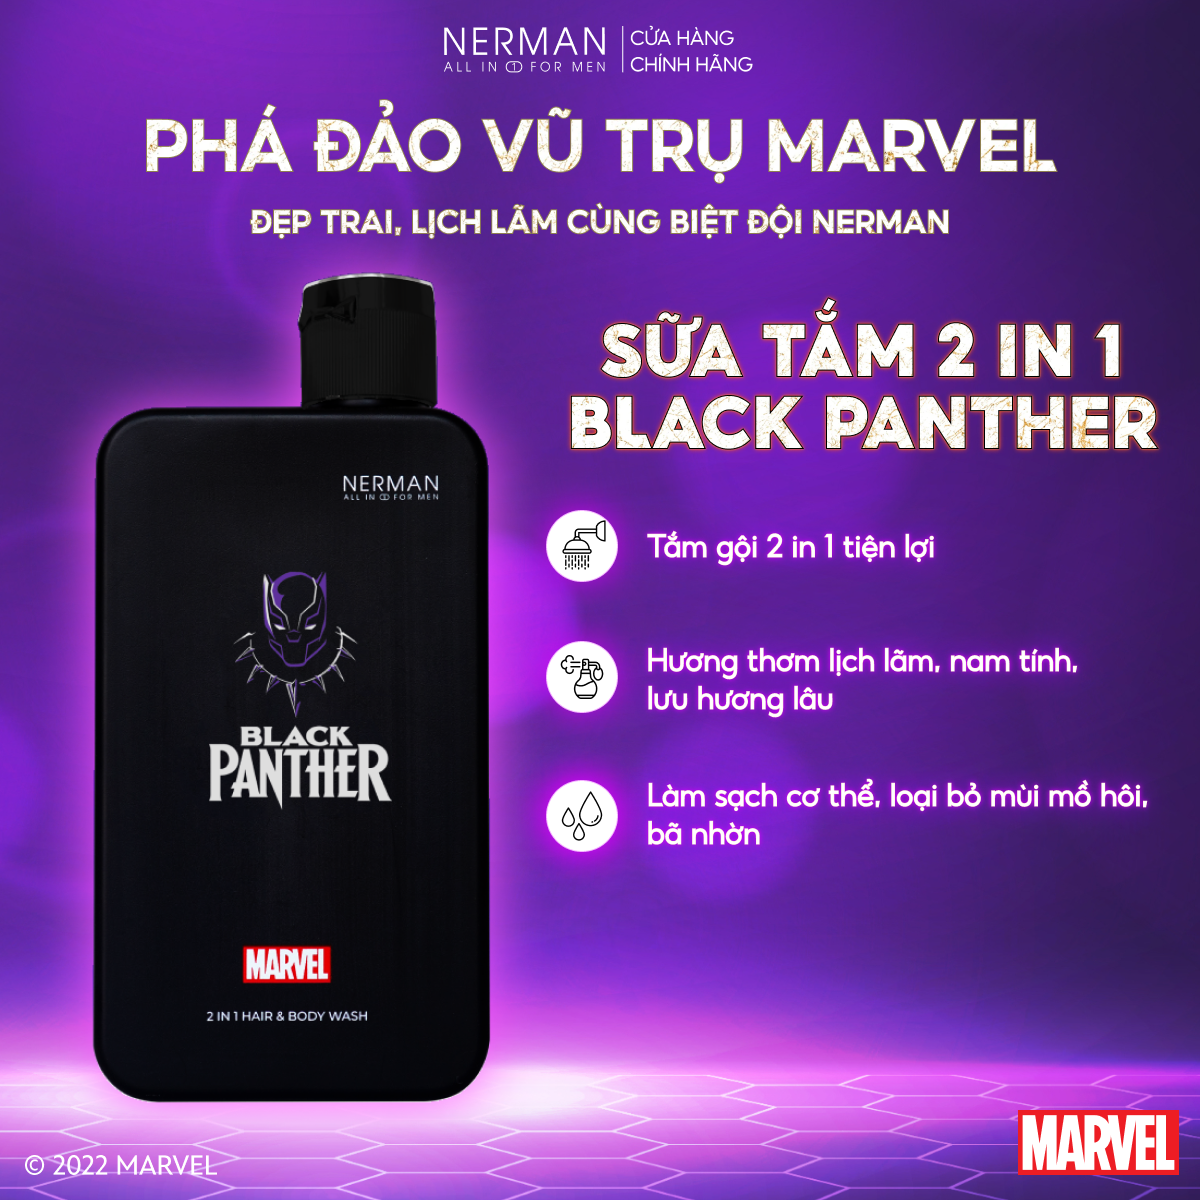 Sữa tắm gội 2 in 1 Black Panther Marvel Collection Nerman hương nước hoa cao cấp 350g